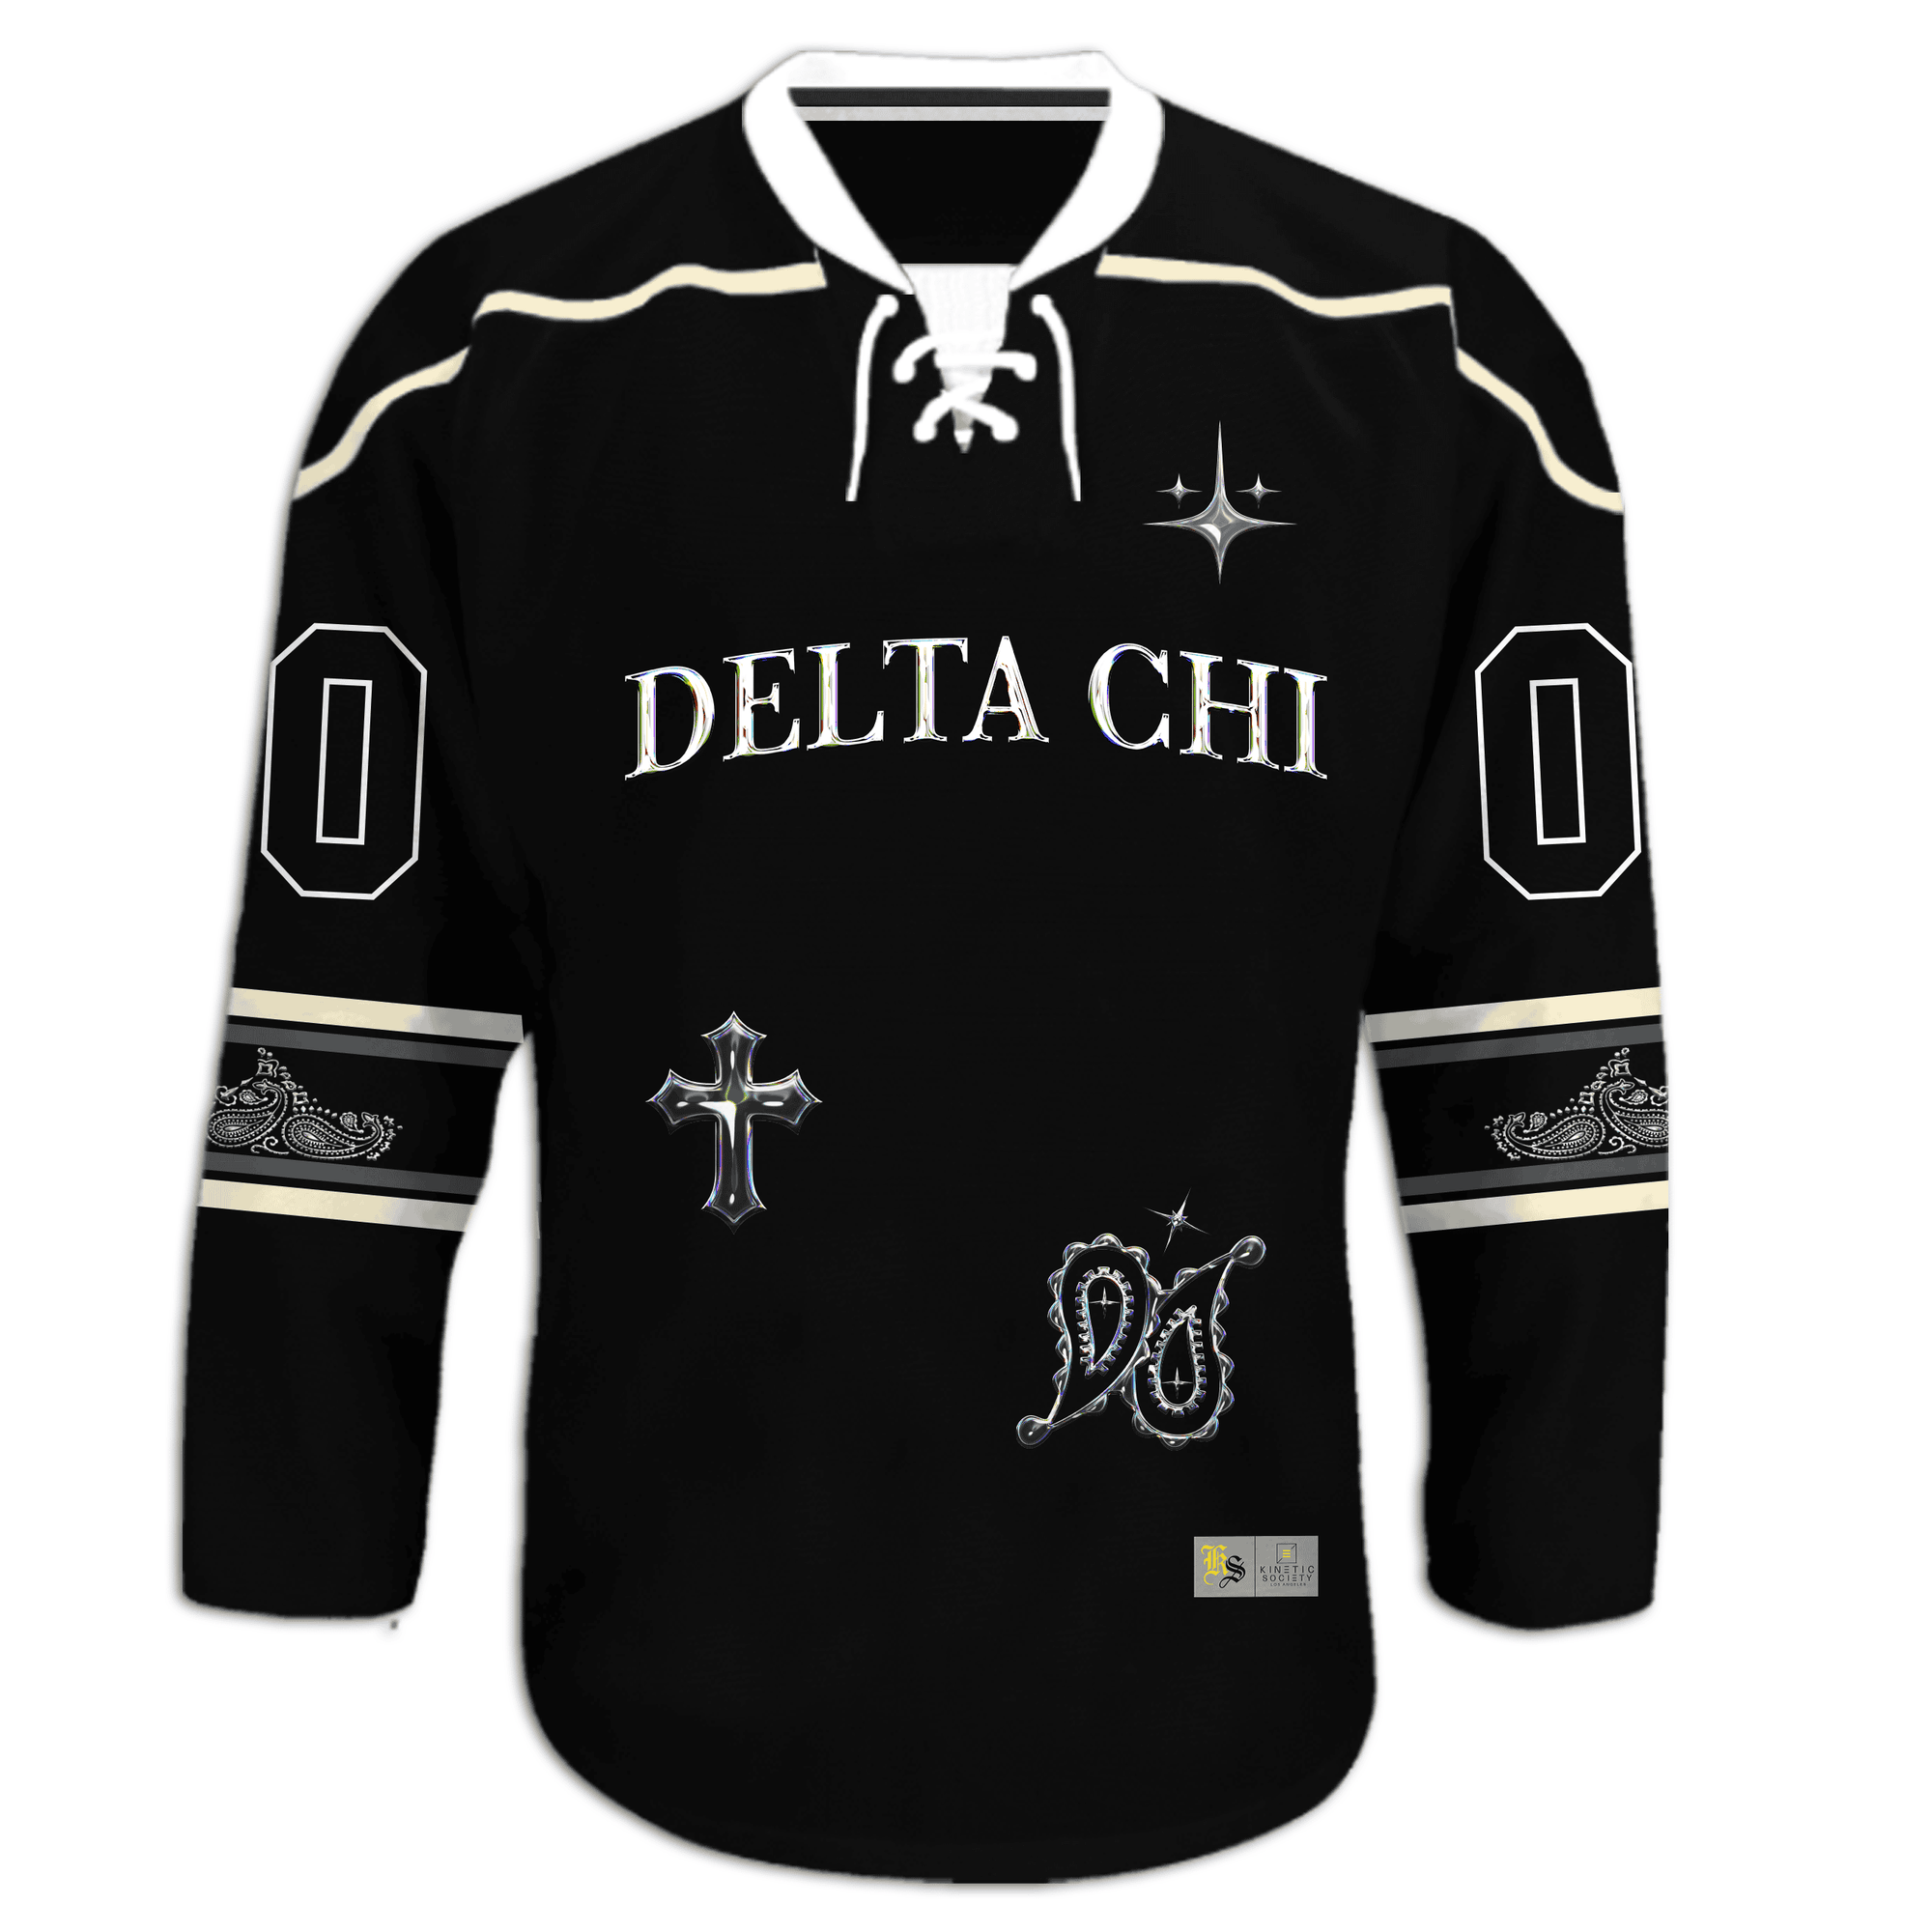 Delta Chi] - Chrome Paisley Hockey Jersey